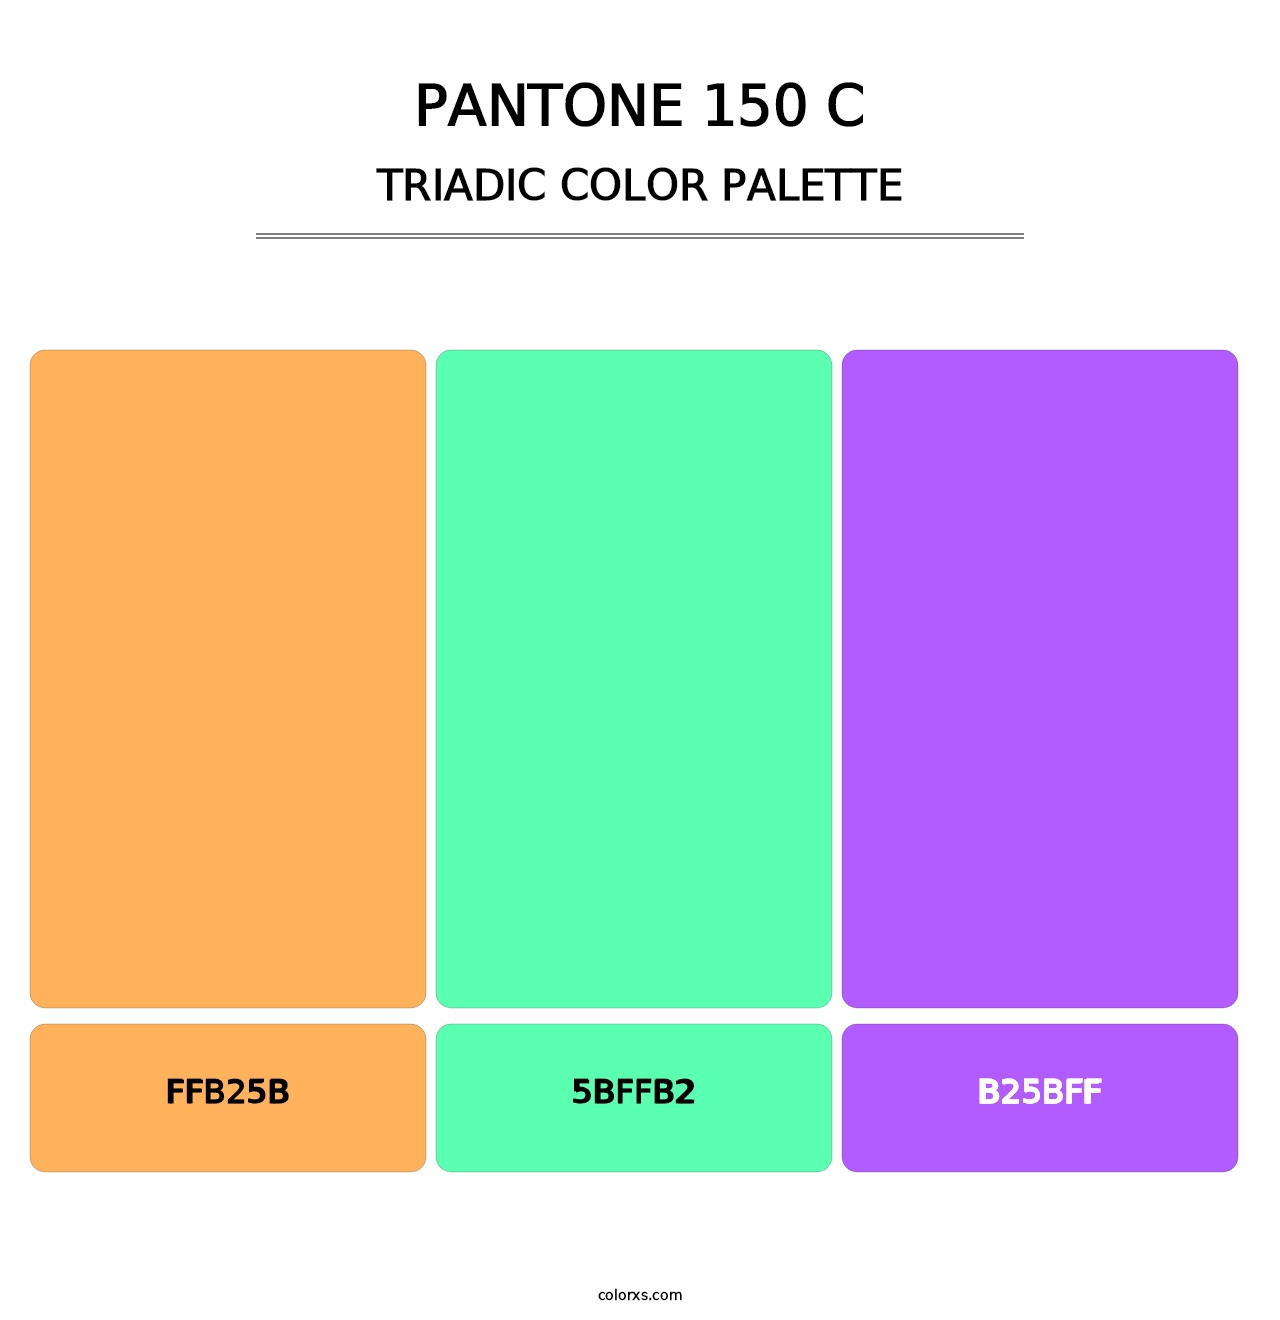 PANTONE 150 C - Triadic Color Palette